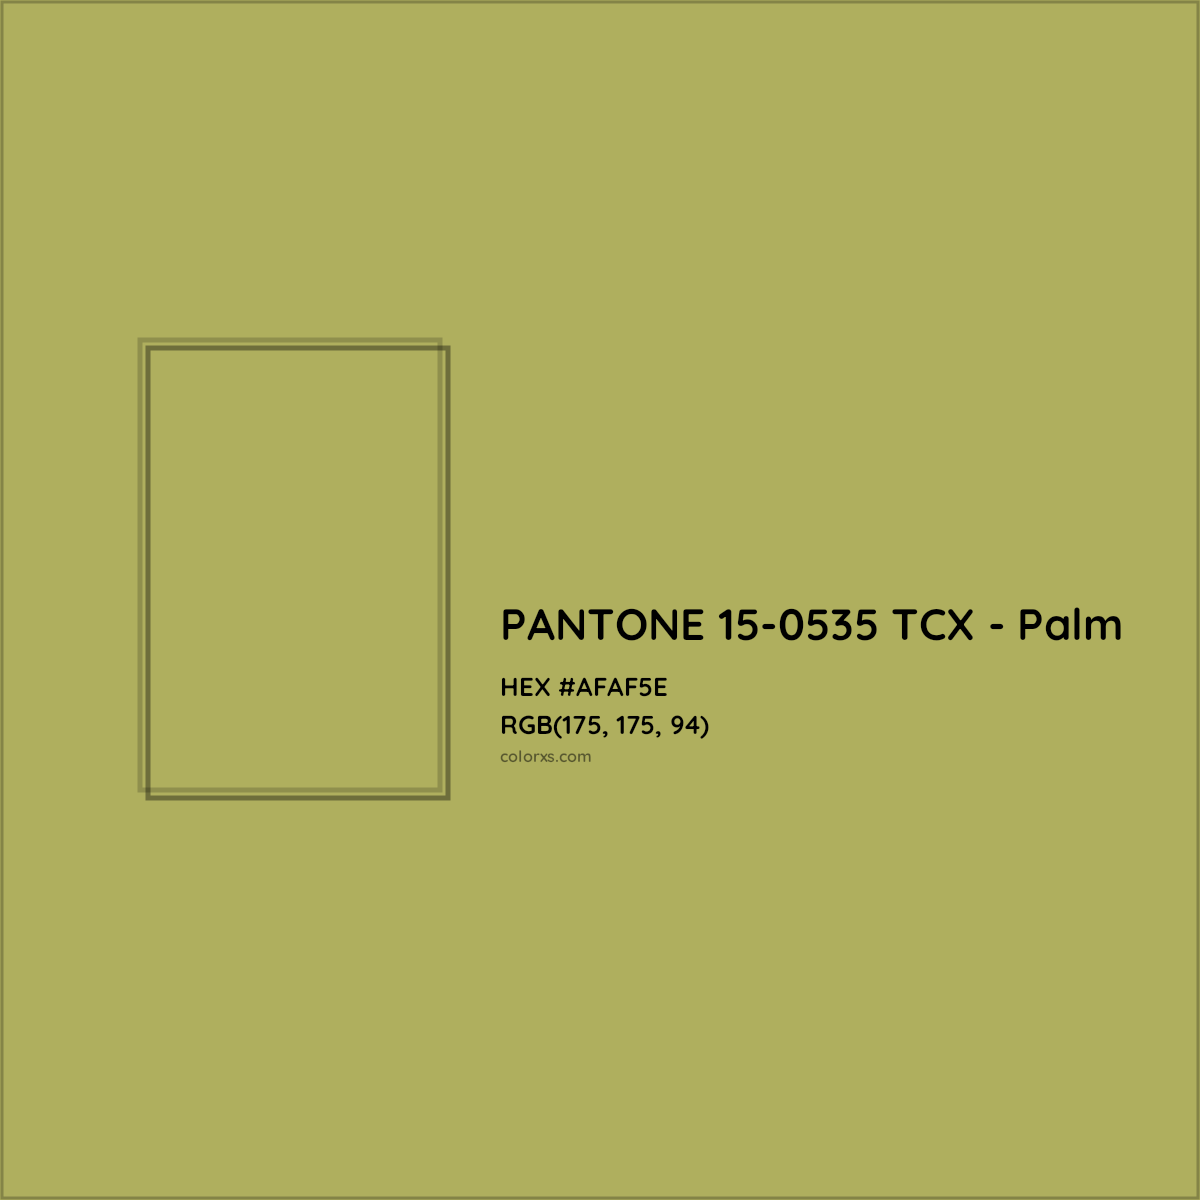 HEX #AFAF5E PANTONE 15-0535 TCX - Palm CMS Pantone TCX - Color Code